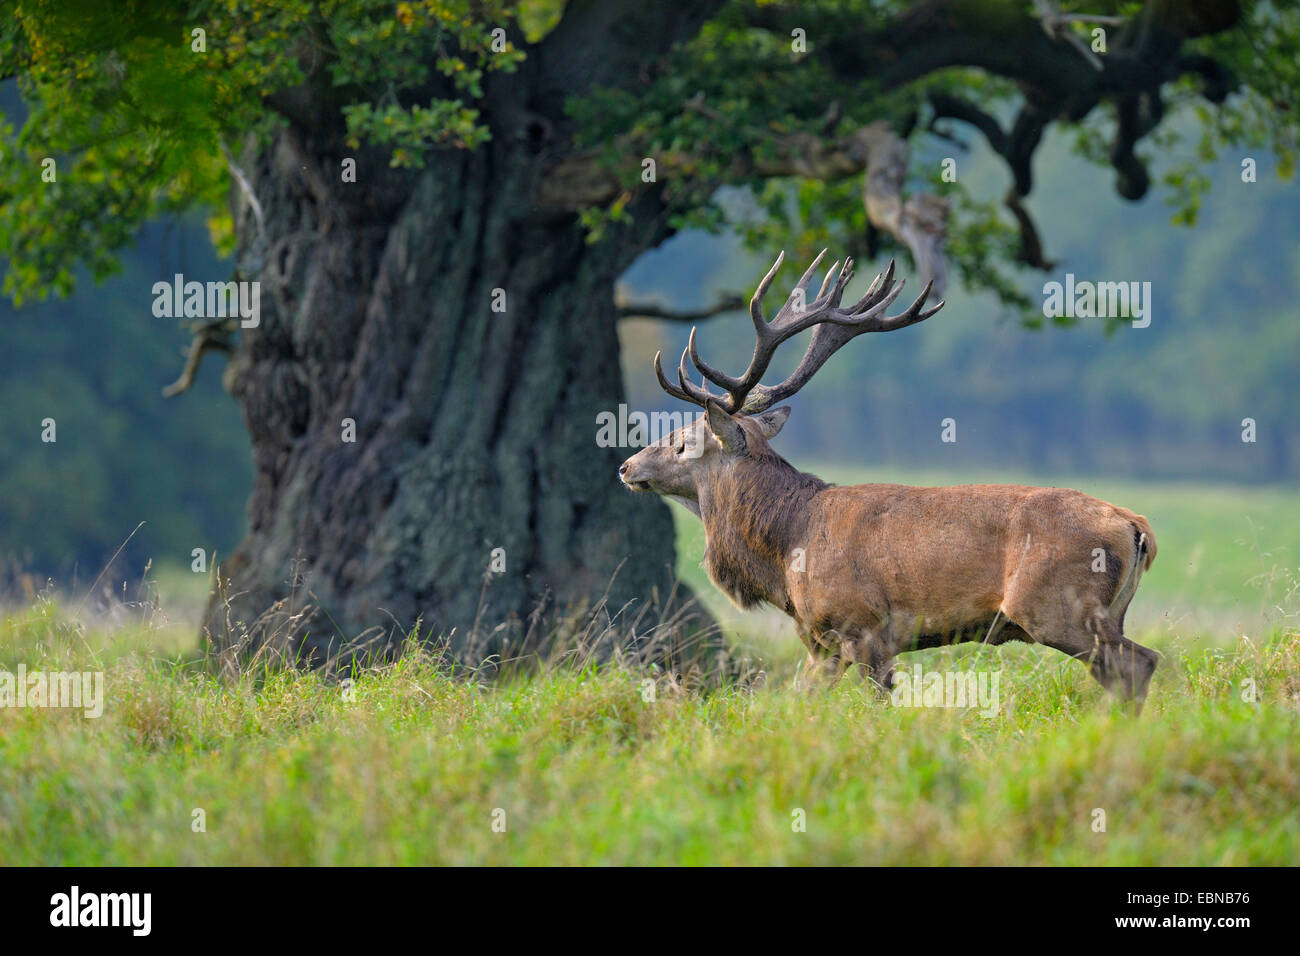 red deer (Cervus elaphus), impressive Stag standing under a several hundred years old oak, Denmark Stock Photo